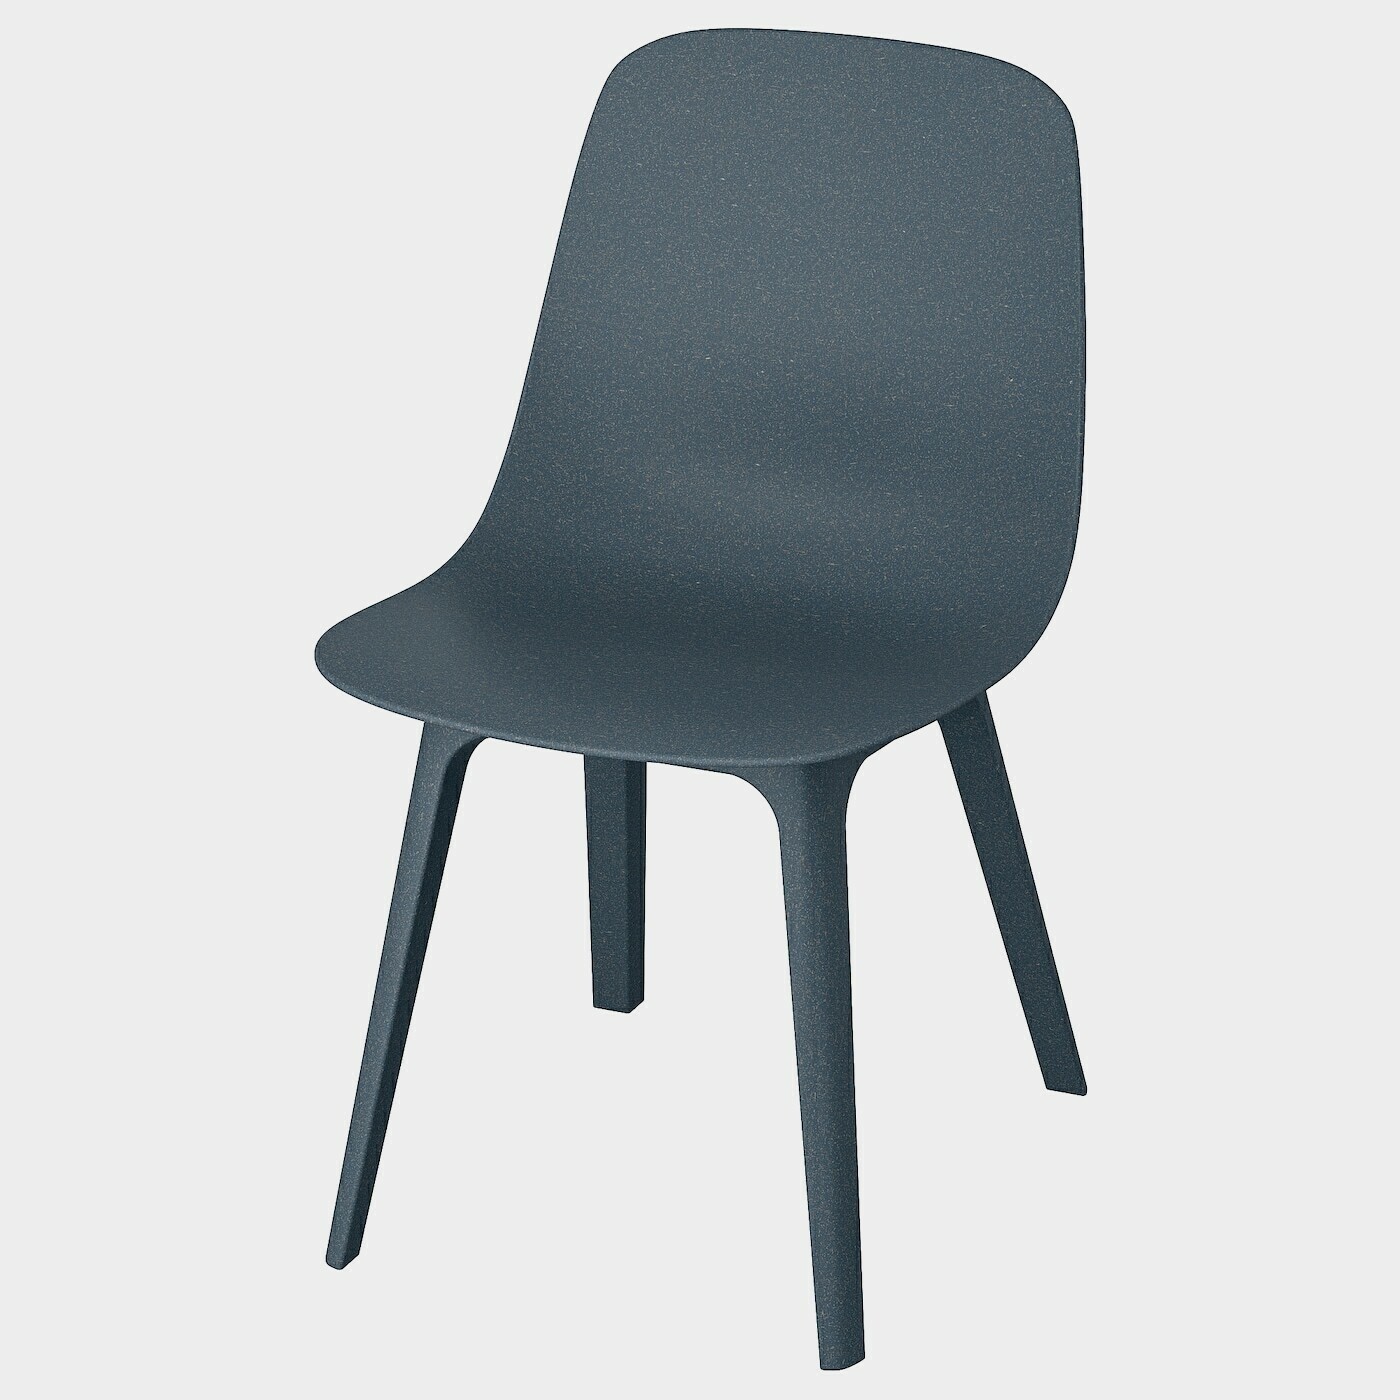 ODGER Stuhl  - Esszimmerstühle - Möbel Ideen für dein Zuhause von Home Trends. Möbel Trends von Social Media Influencer für dein Skandi Zuhause.